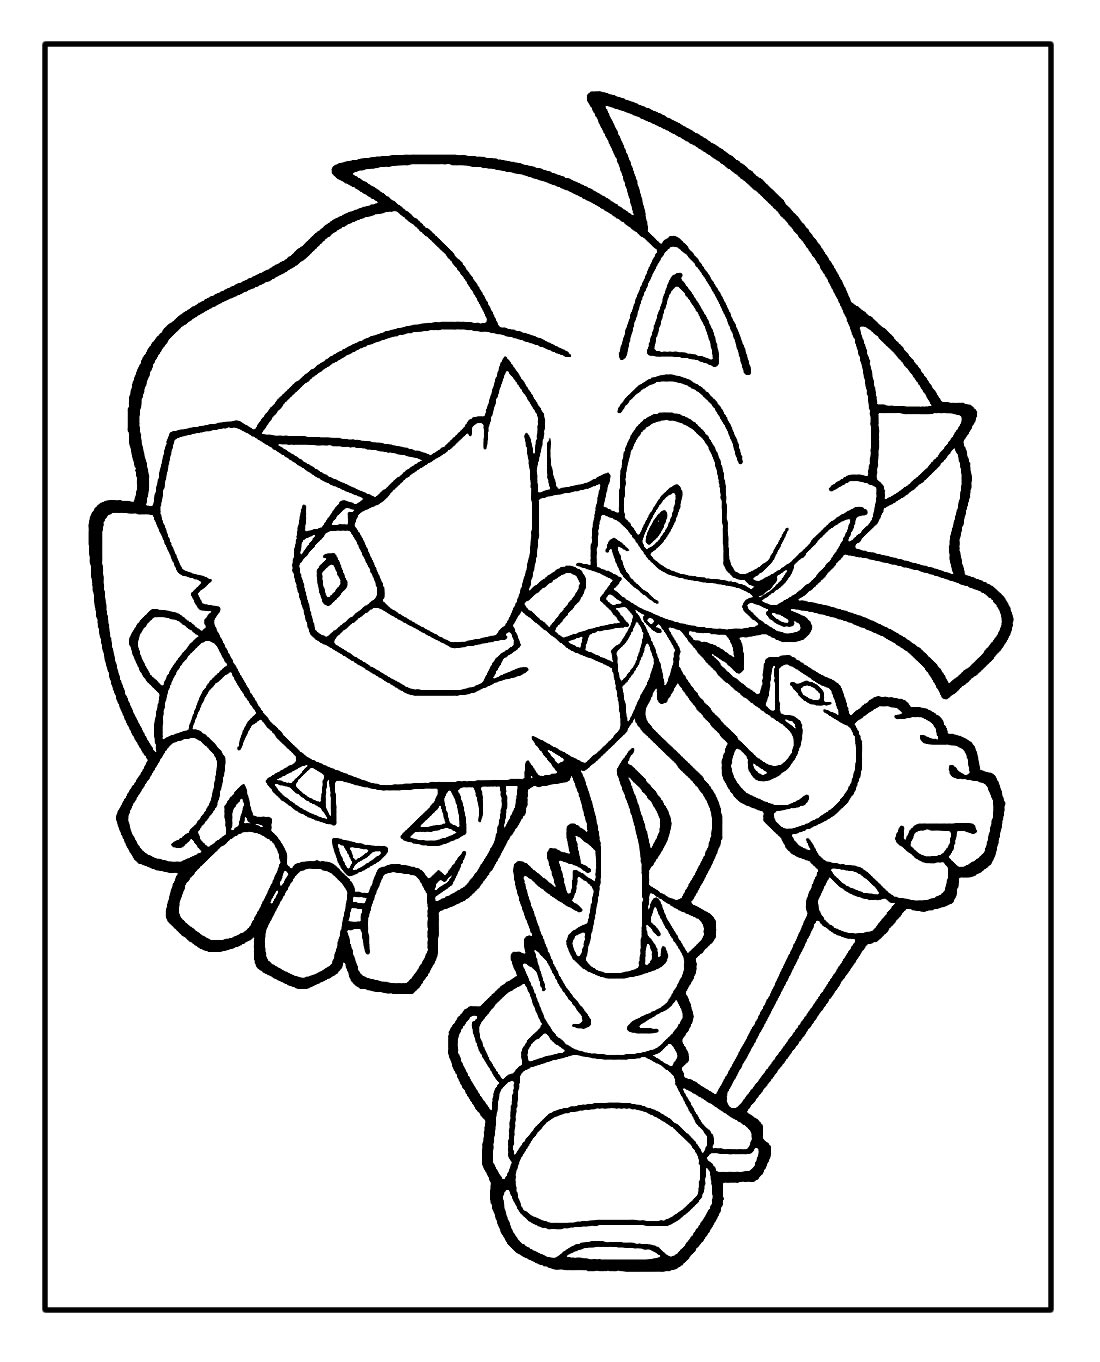 Página para colorir do Sonic